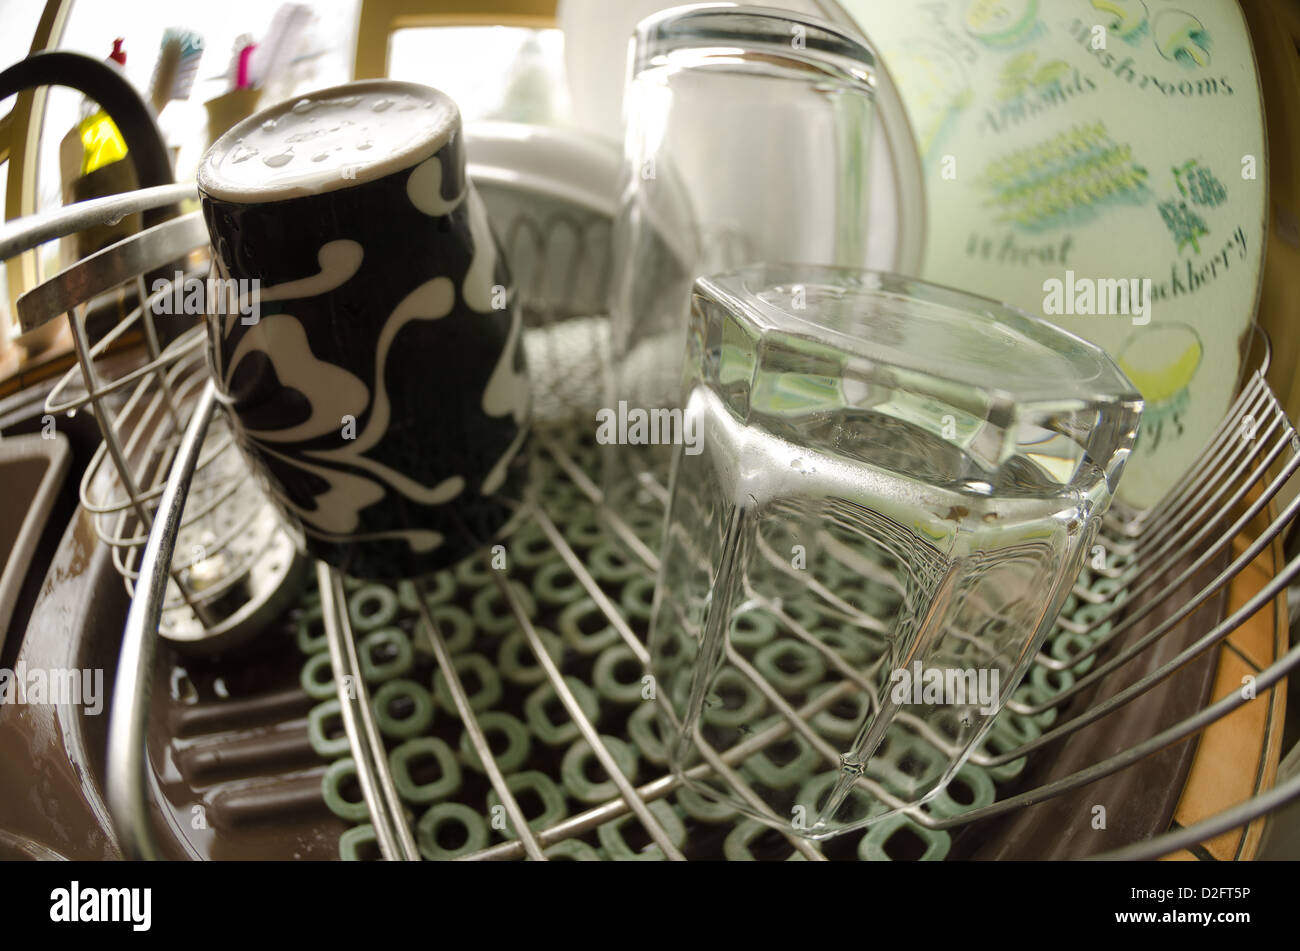 Pulire il boccale e occhiali sulla scheda di drenaggio all'interno di  attività da svolgere in cucina del giorno ha sottolineato distorta Foto  stock - Alamy